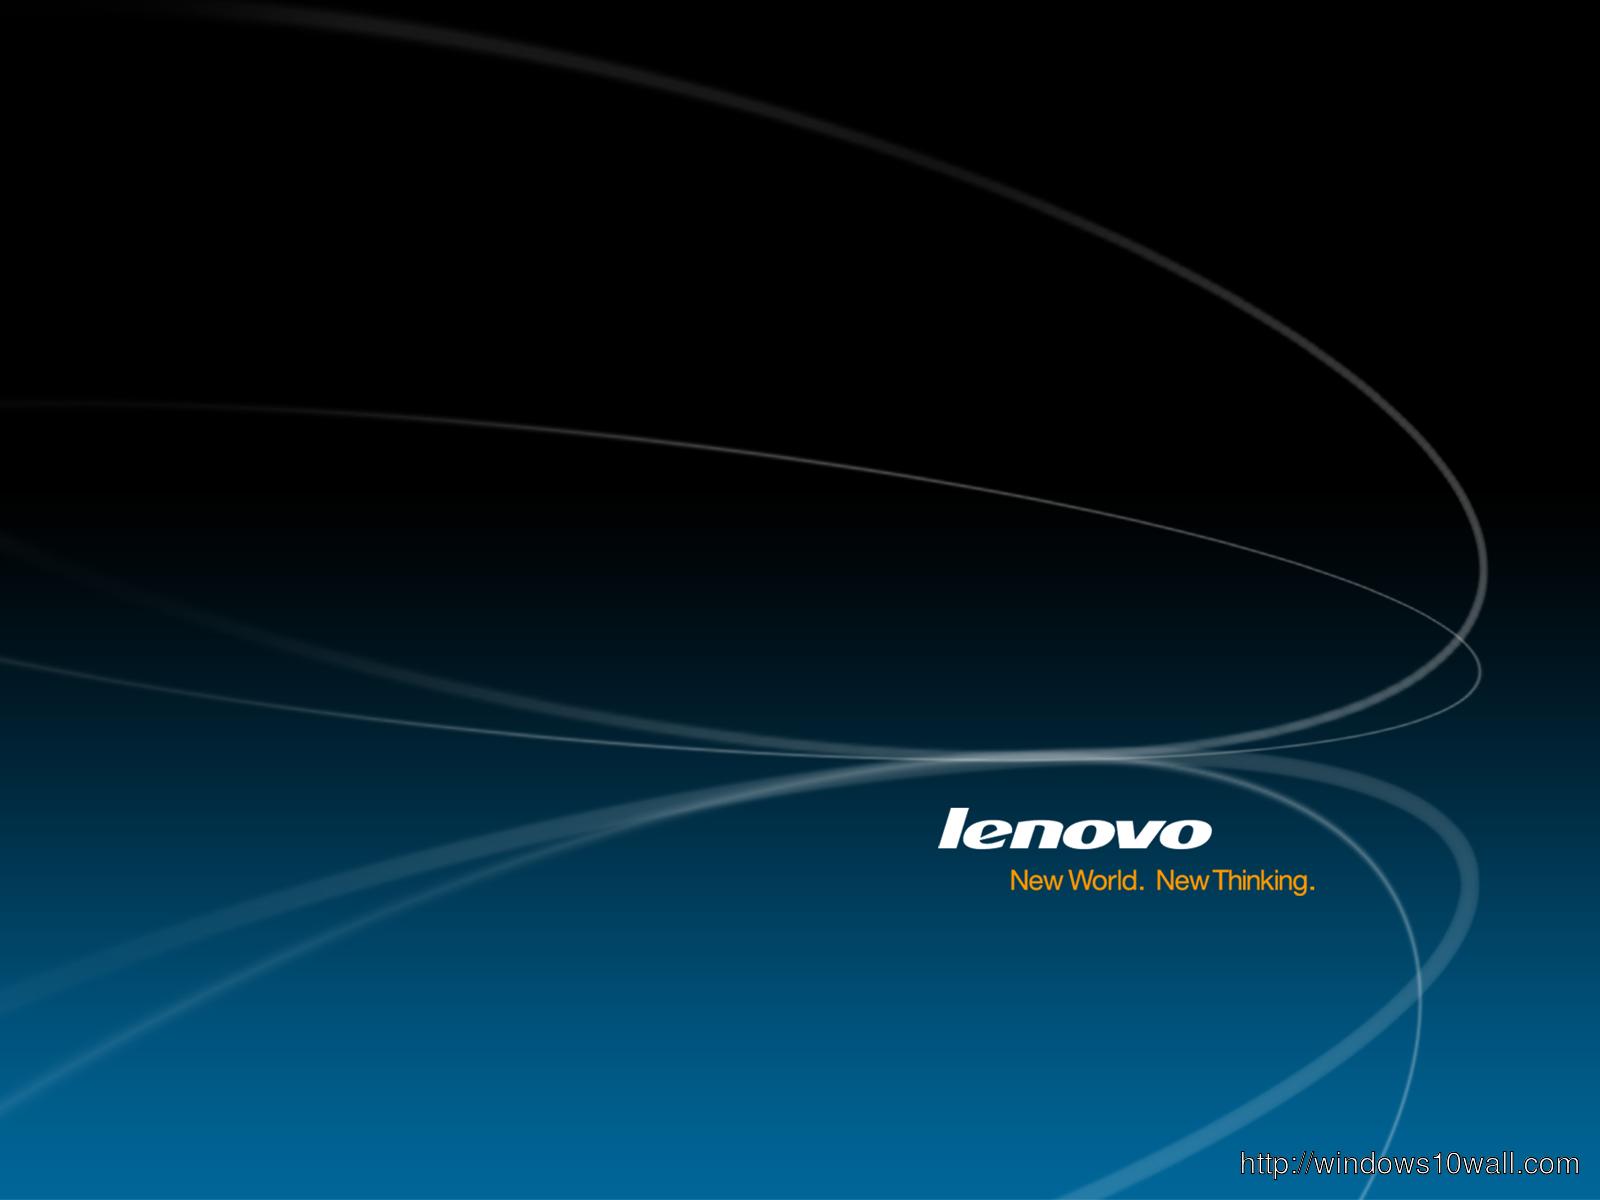 1600x1200 Hình nền Lenovo Hi Resolution Màu xanh đen đậm - Hình nền windows 10